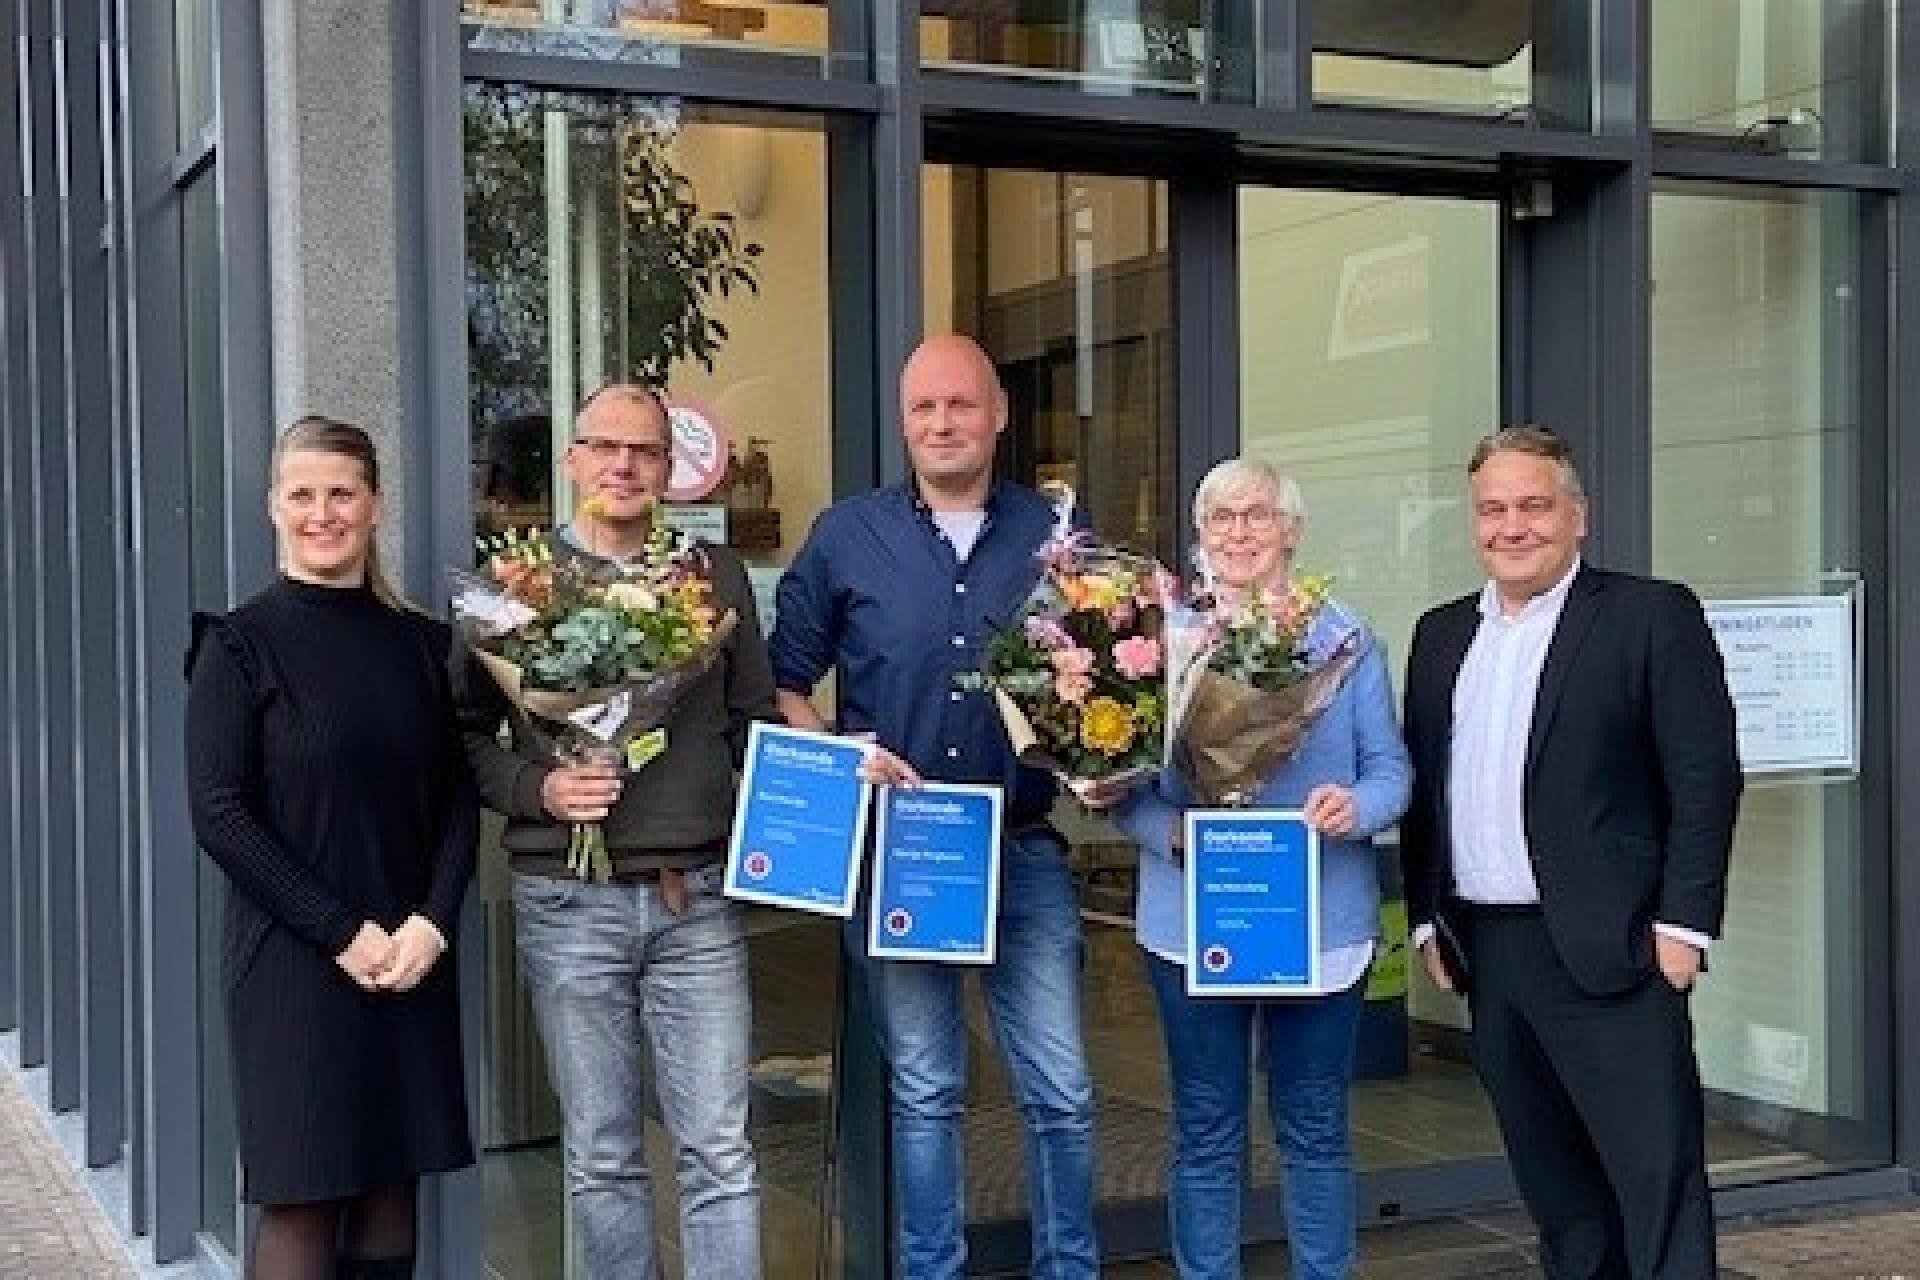 Wethouder Geerdink met de drie vrijwilligers die de vrijwilligersprijs hebben gewonnen en een medewerker van de gemeente Borne. 